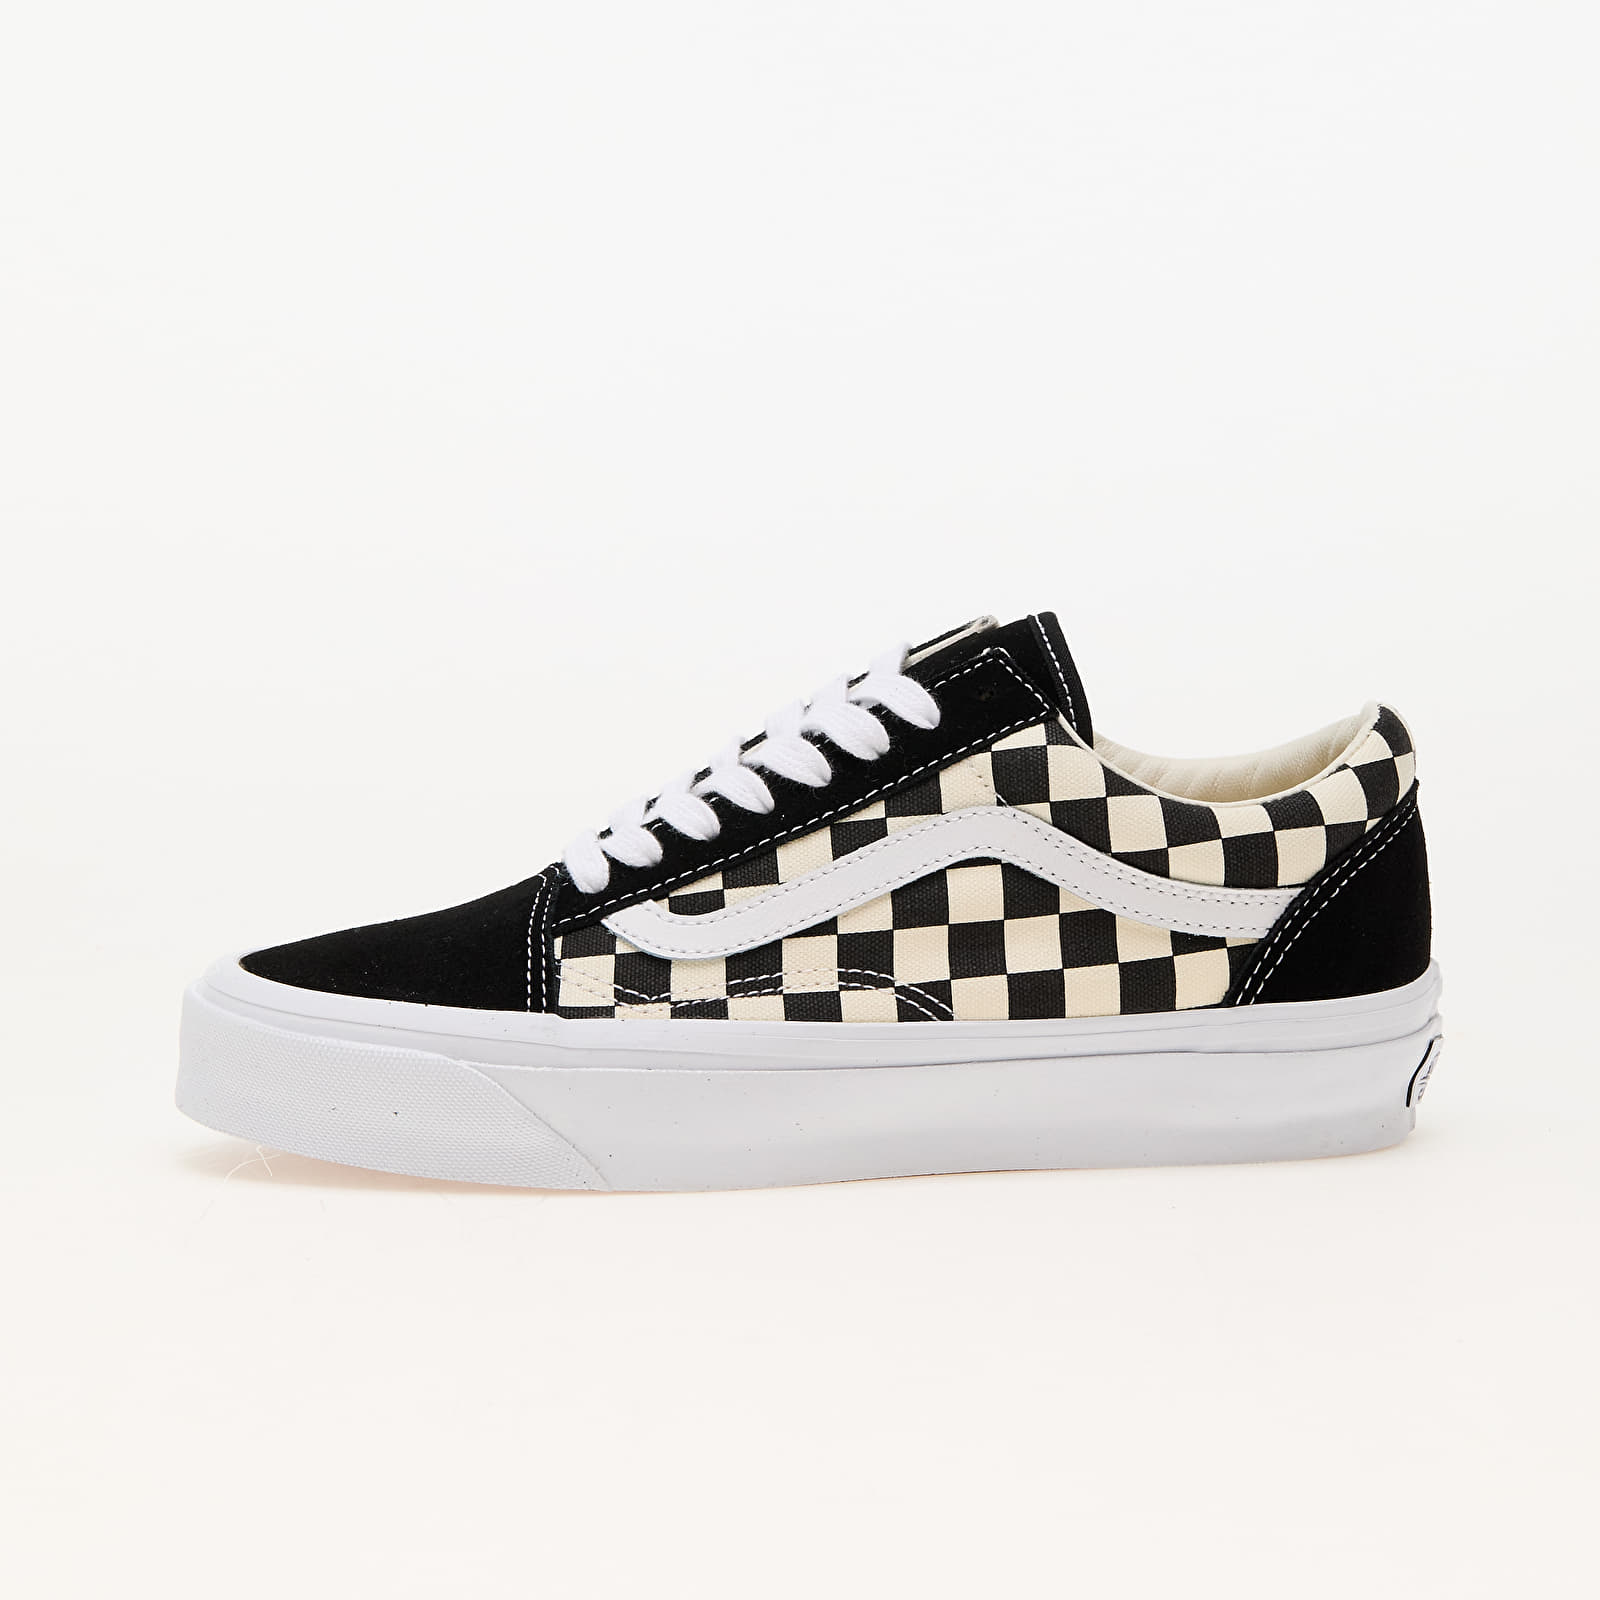 Moški čevlji Vans Old Skool 36 LX Checkerboard Black/ Off White